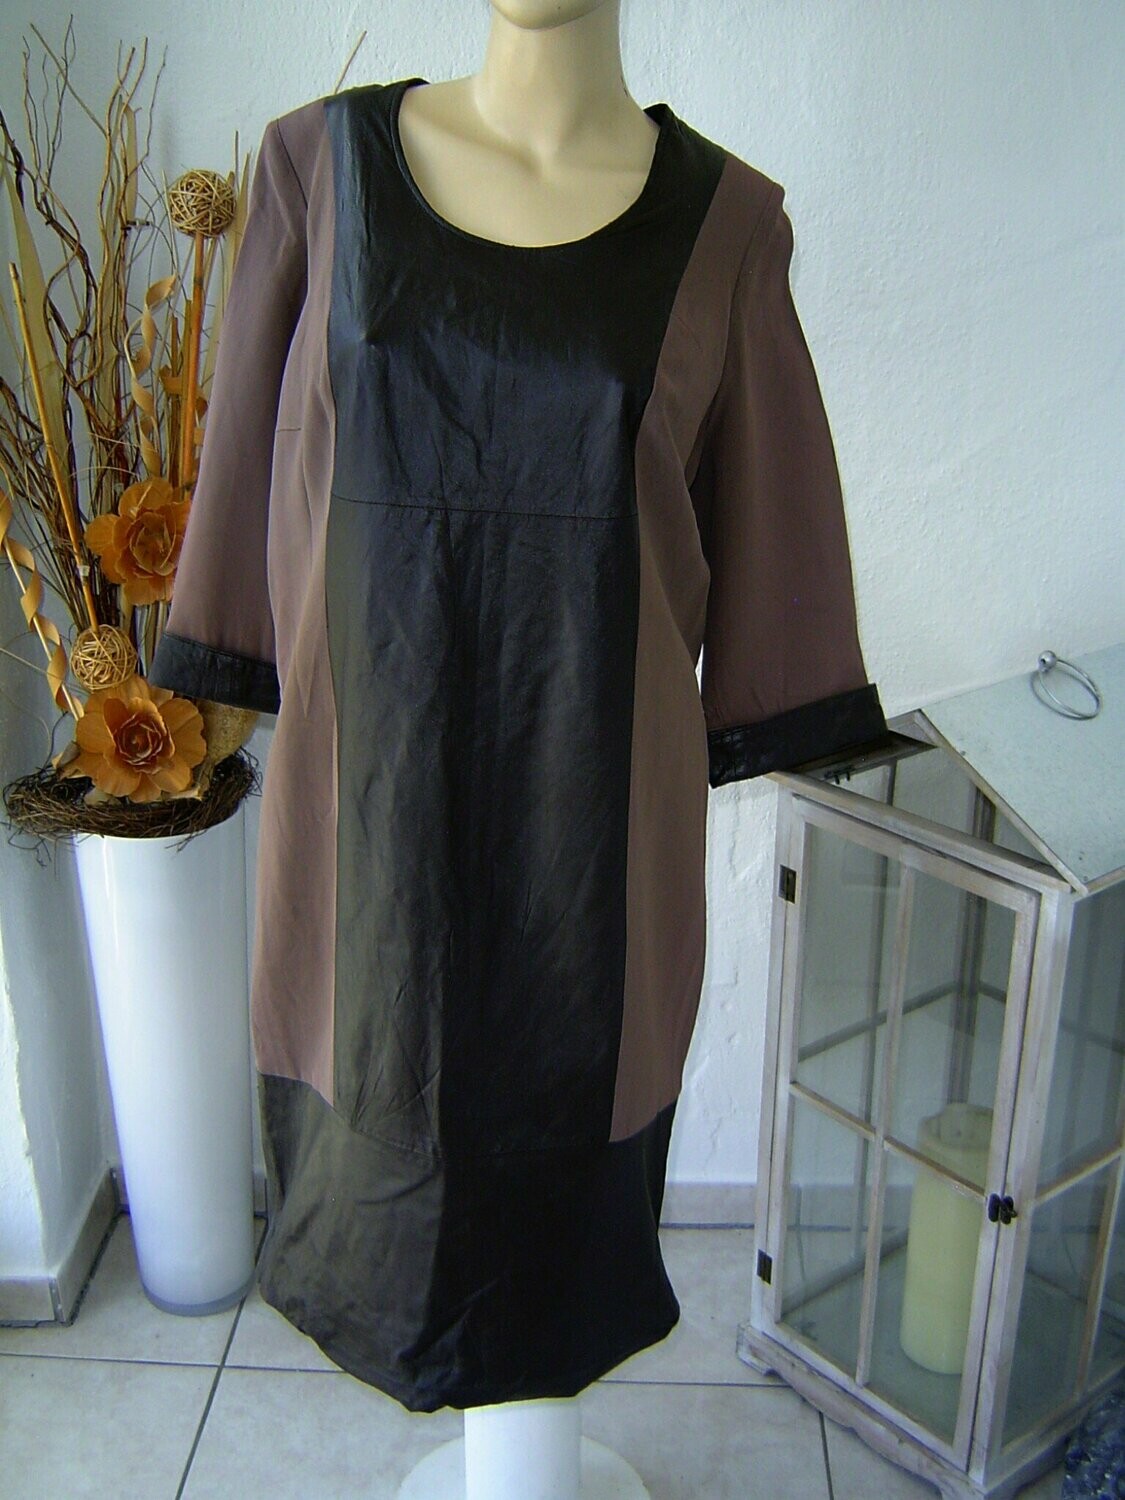 Damen Kleid Gr. 42, 44 braun Leder Lederkleid knielang